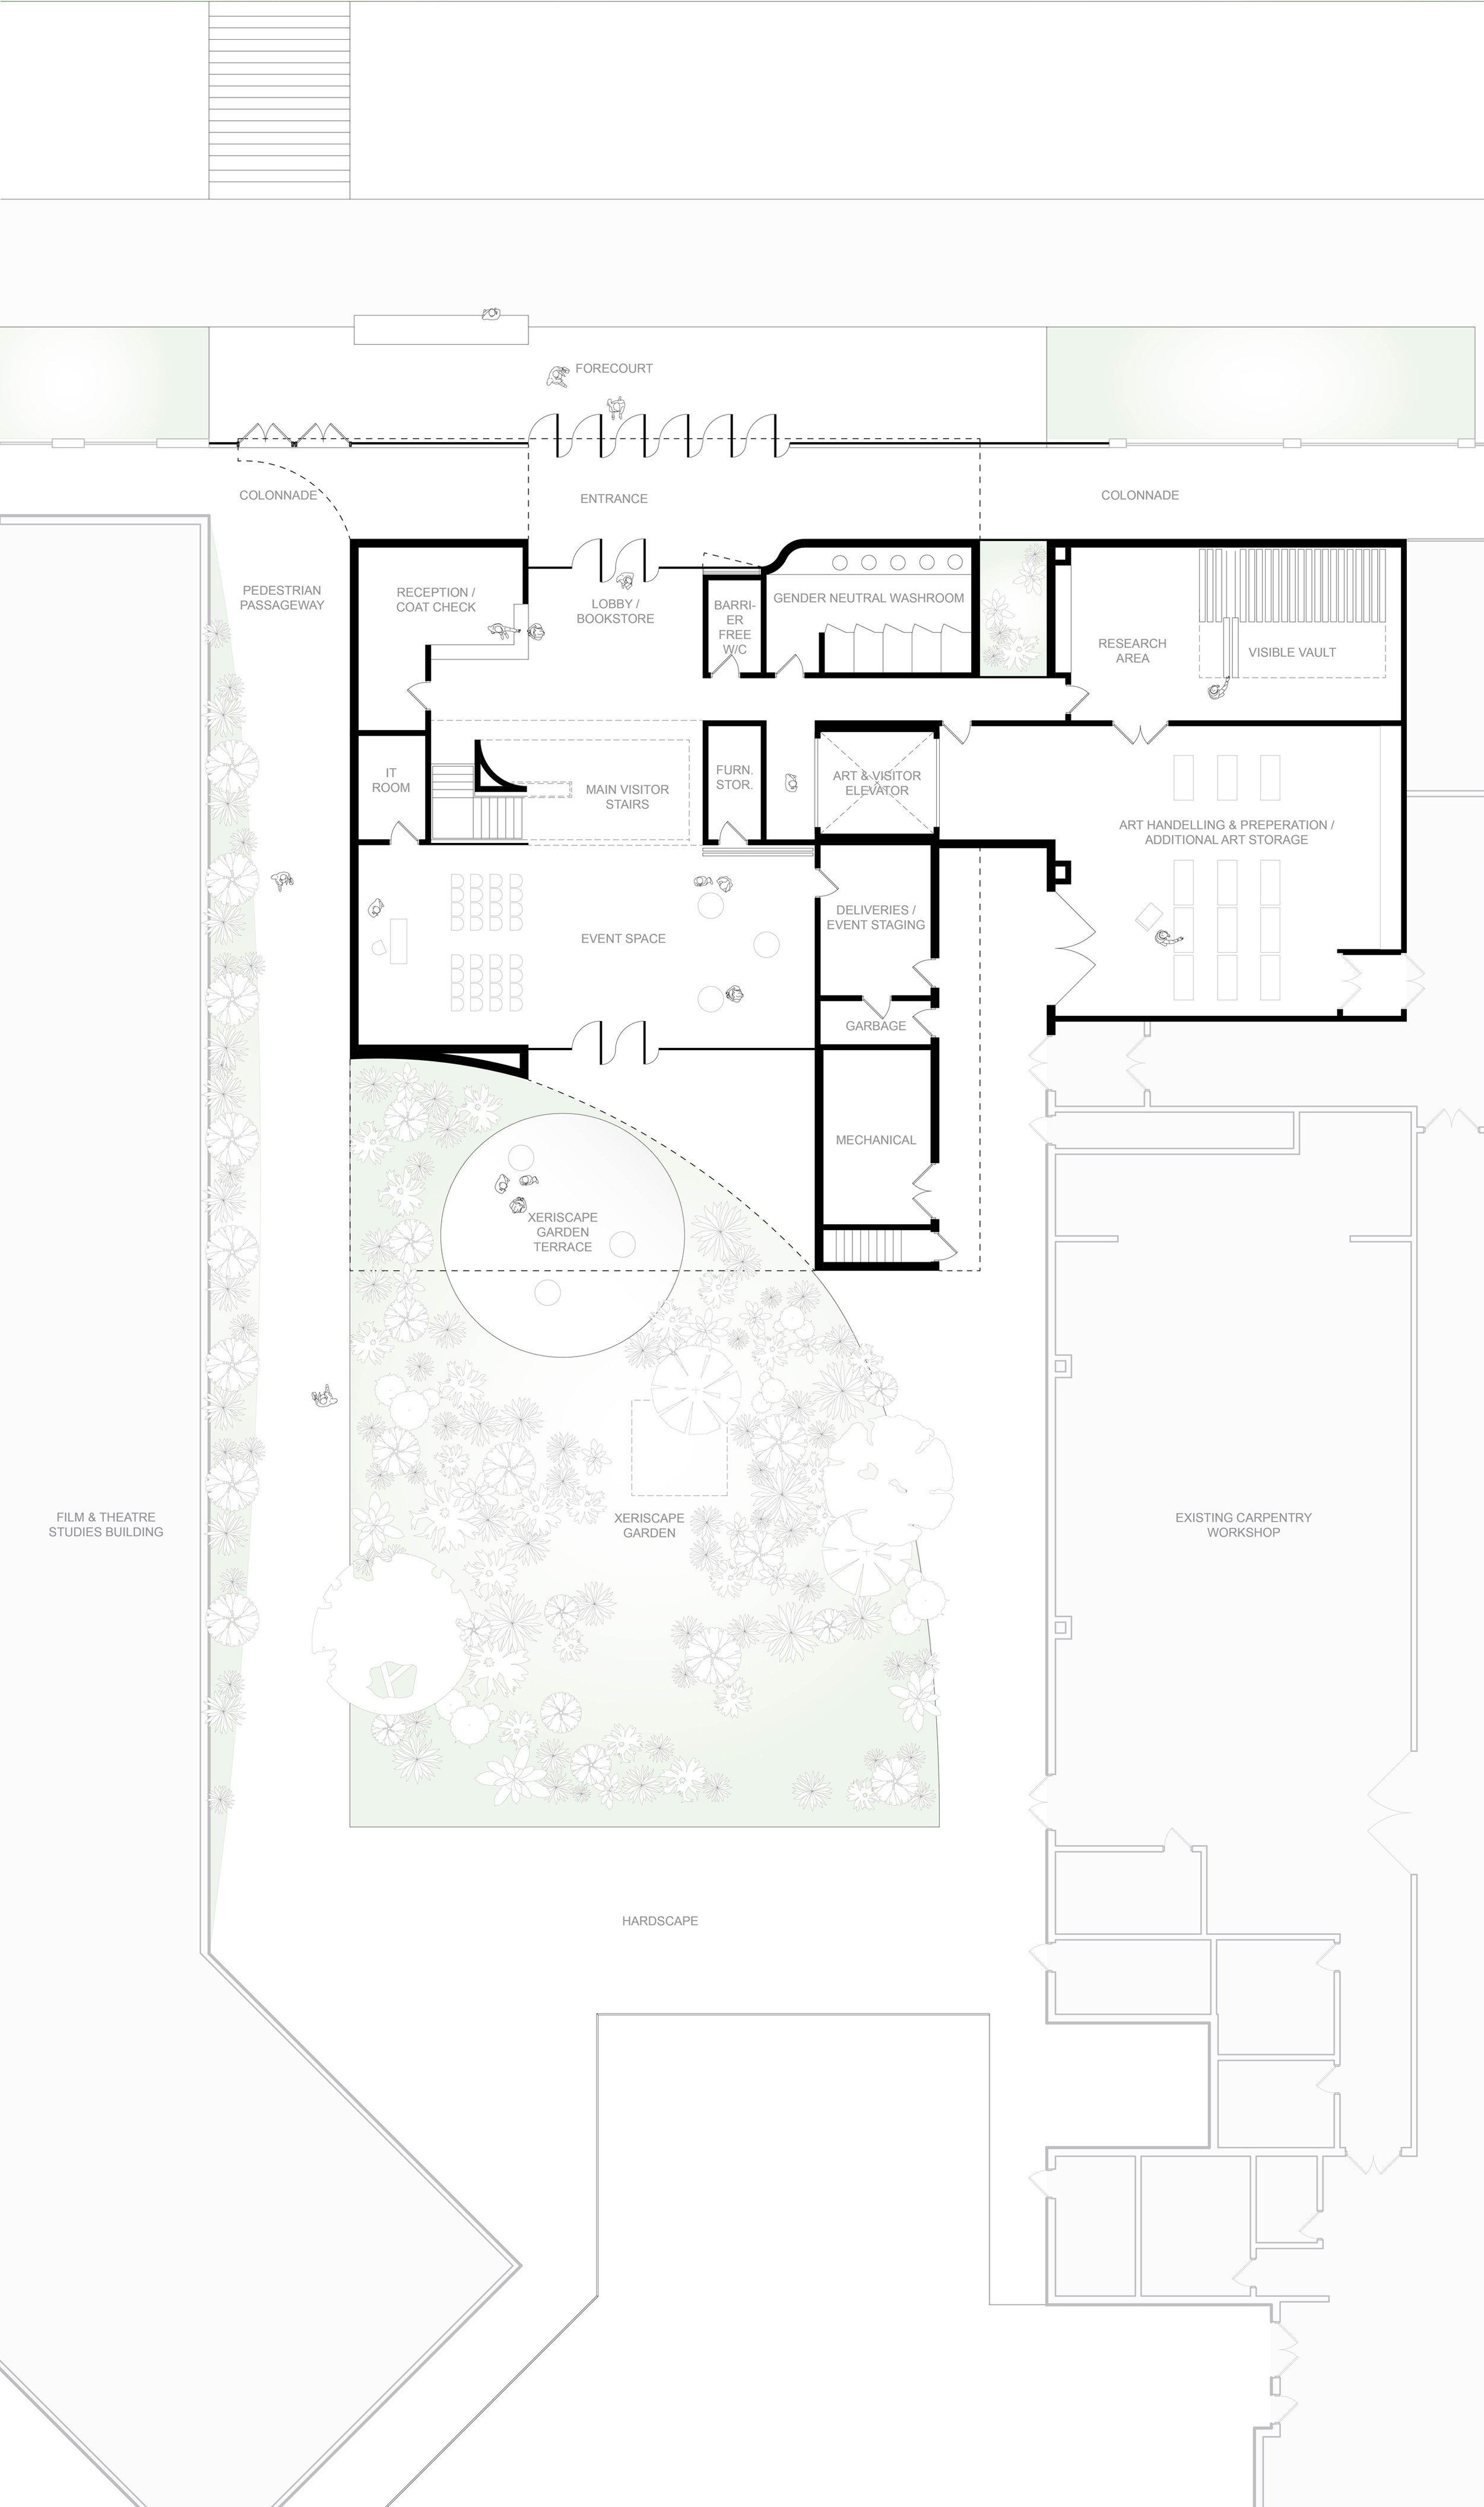 AGYU - Ground Floor Plan